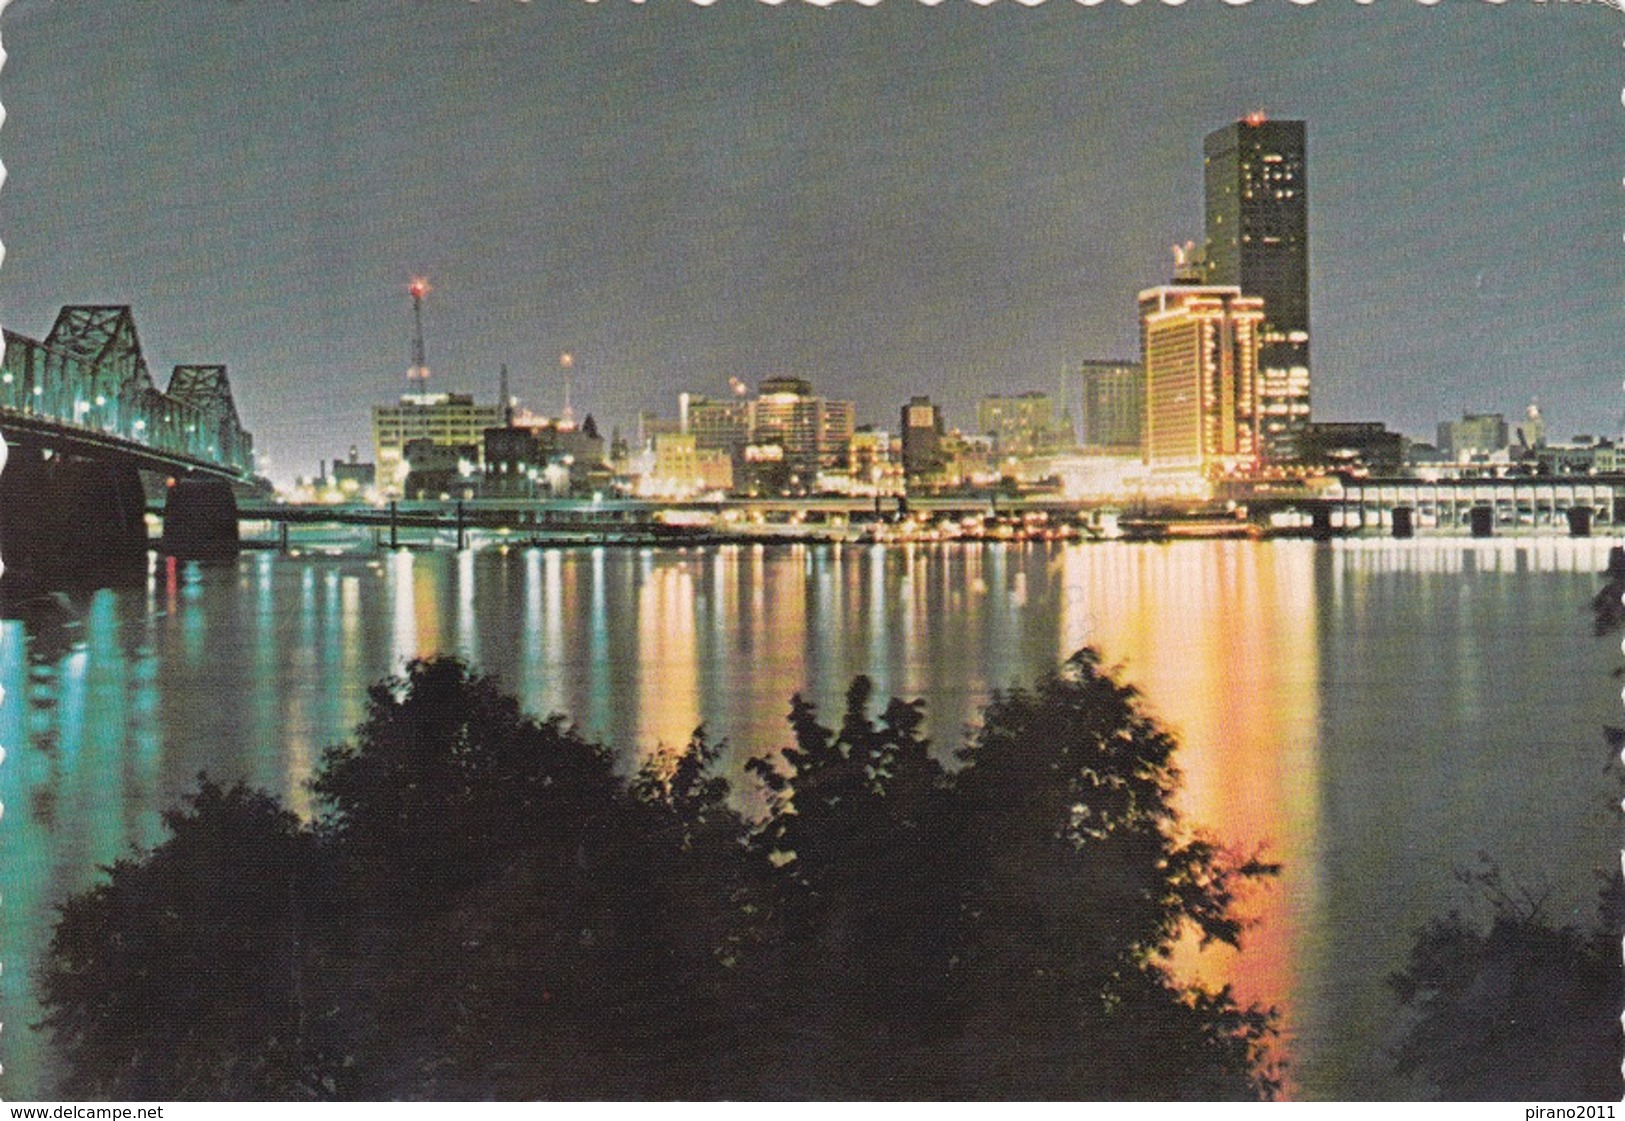 Louisville, Kentucky, Night View - Louisville